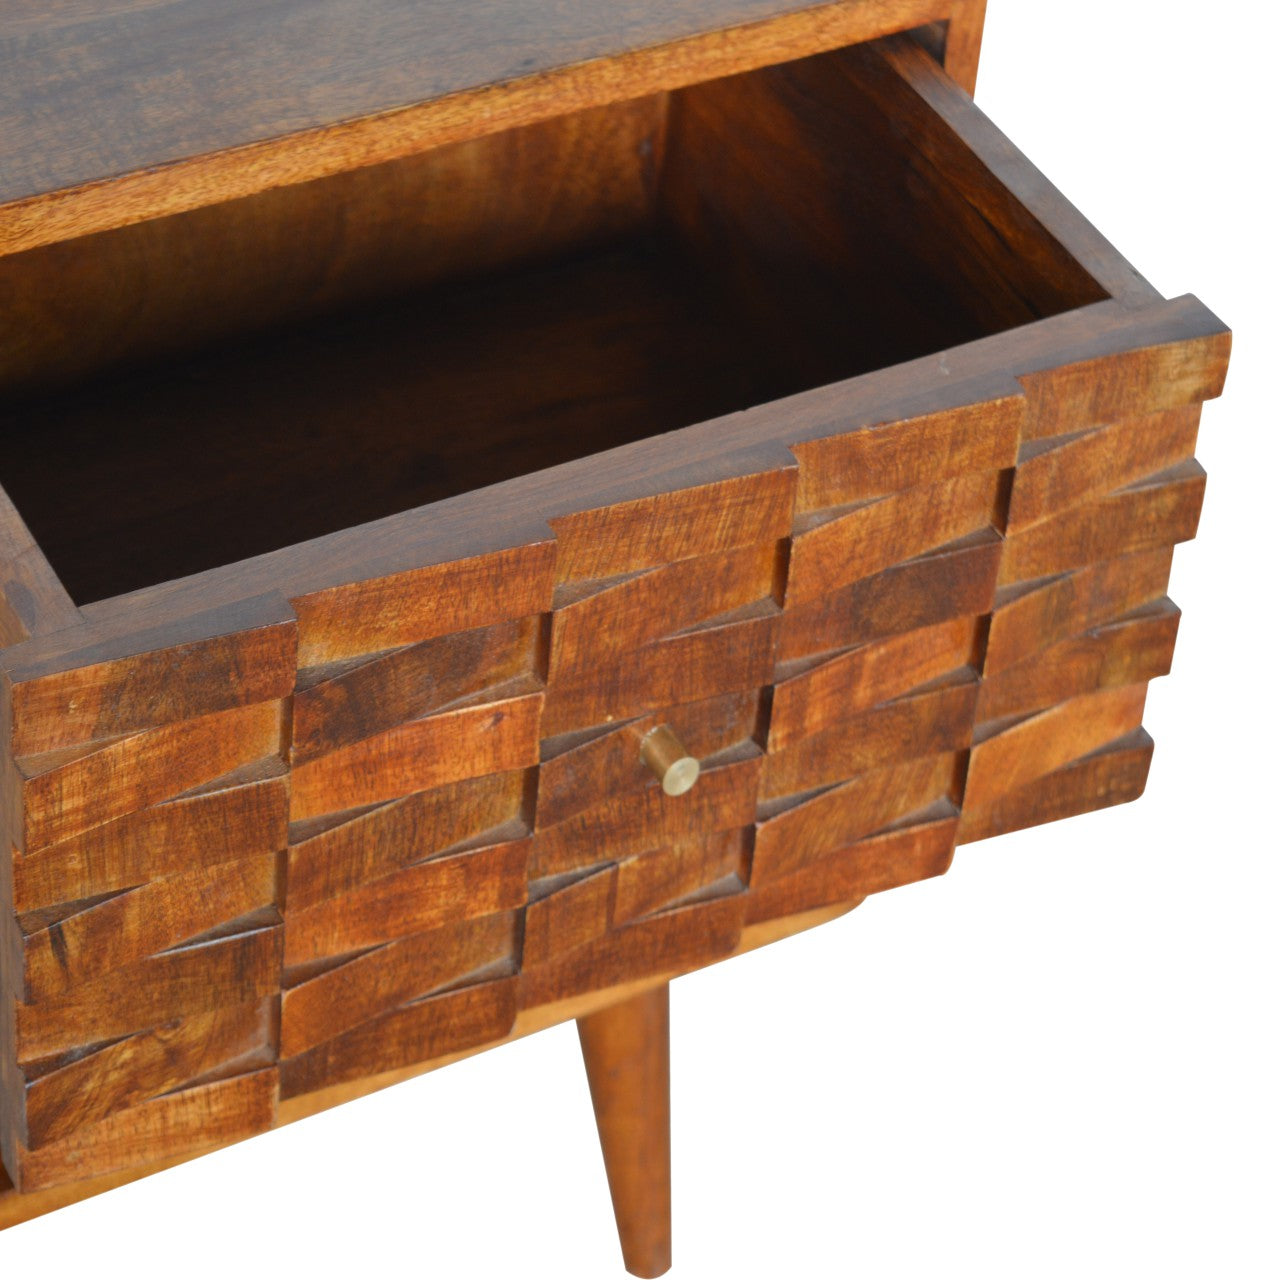 Tile Carved Chestnut Bedside Table with Open Slot